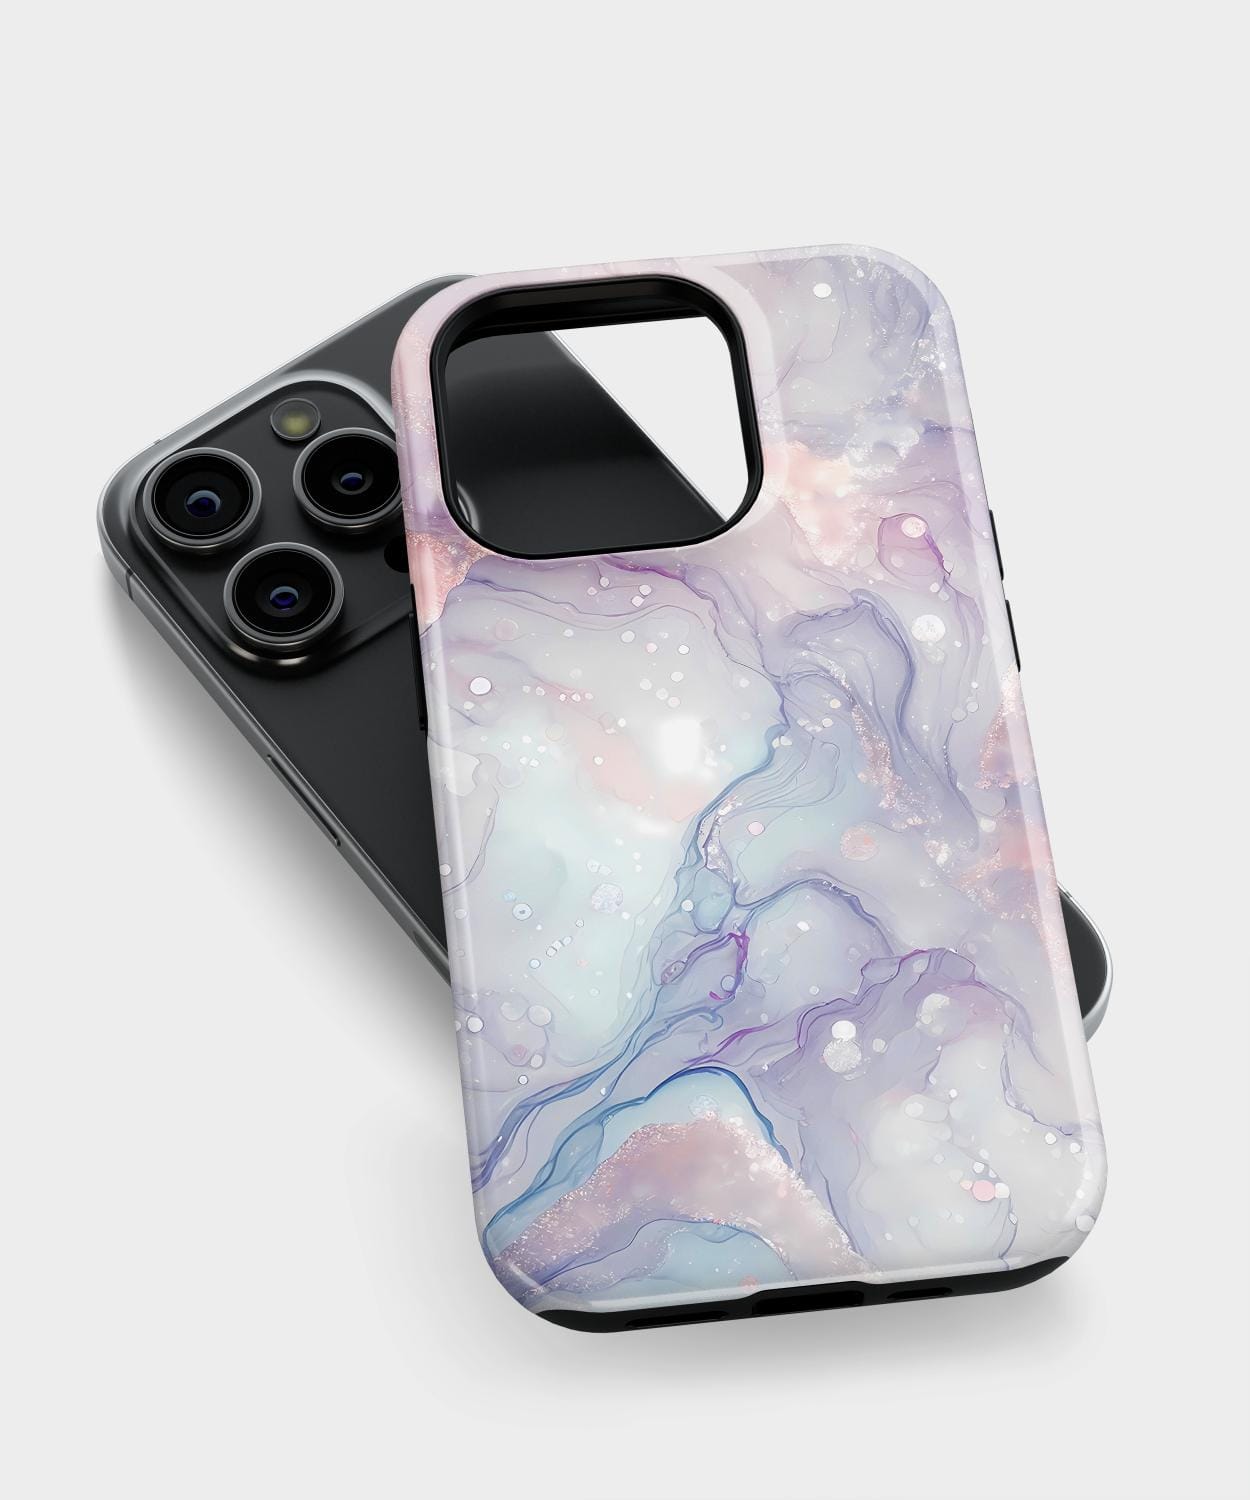 Lavender iPhone Case